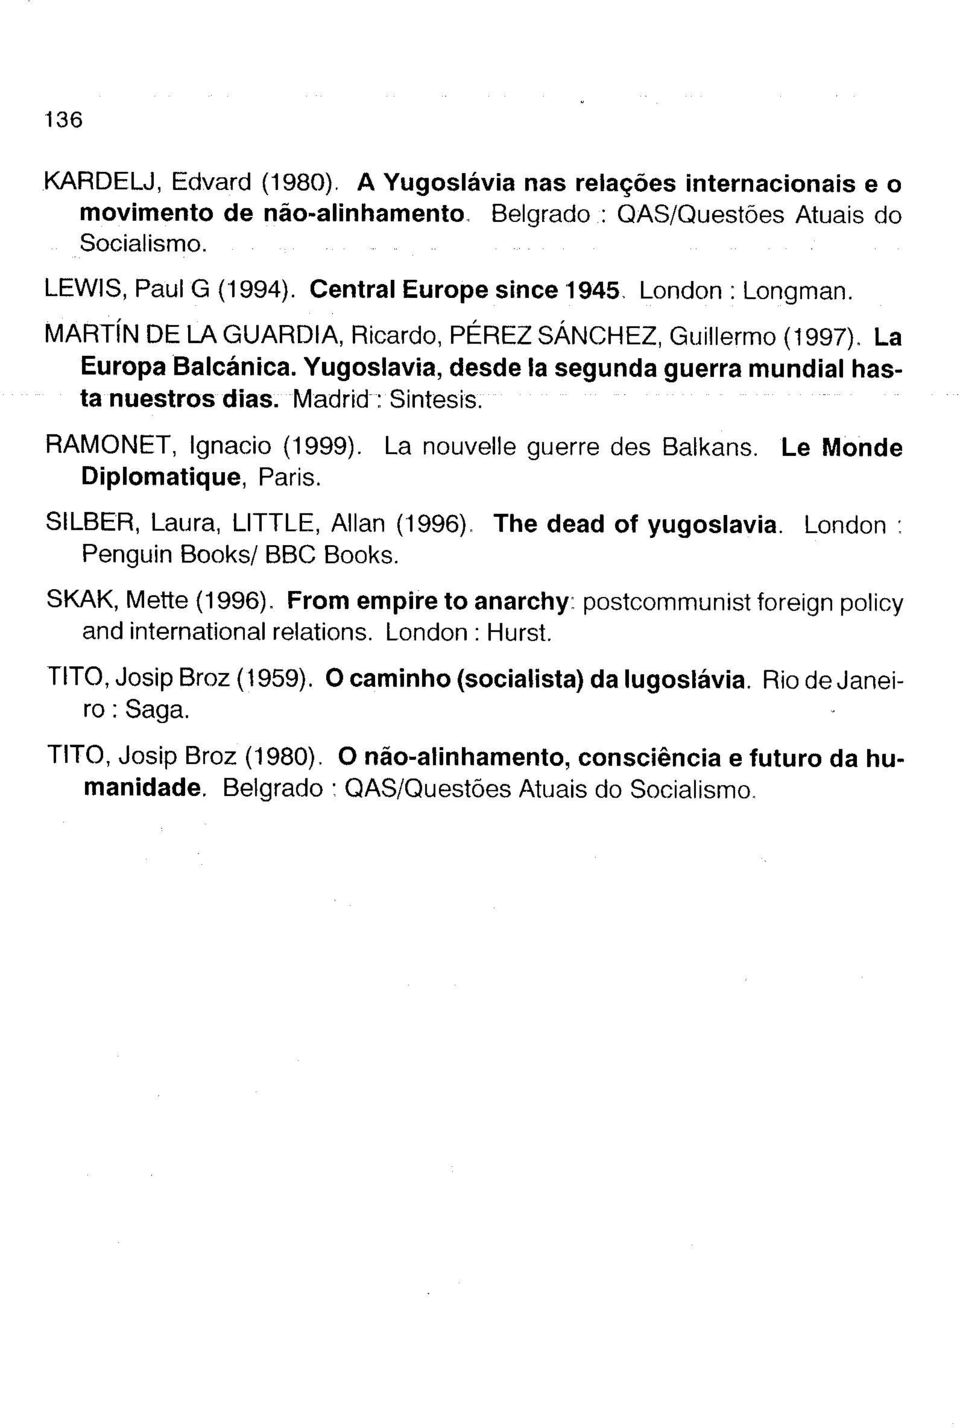 Madrid : Sintesis. RAMONET, Ignacio (1999). La nouvelle guerre des Balkans. Le Monde Diplomatique, Paris. SILBER, Laura, LITTLE, AIlan (1996), The dead of yugoslavia.